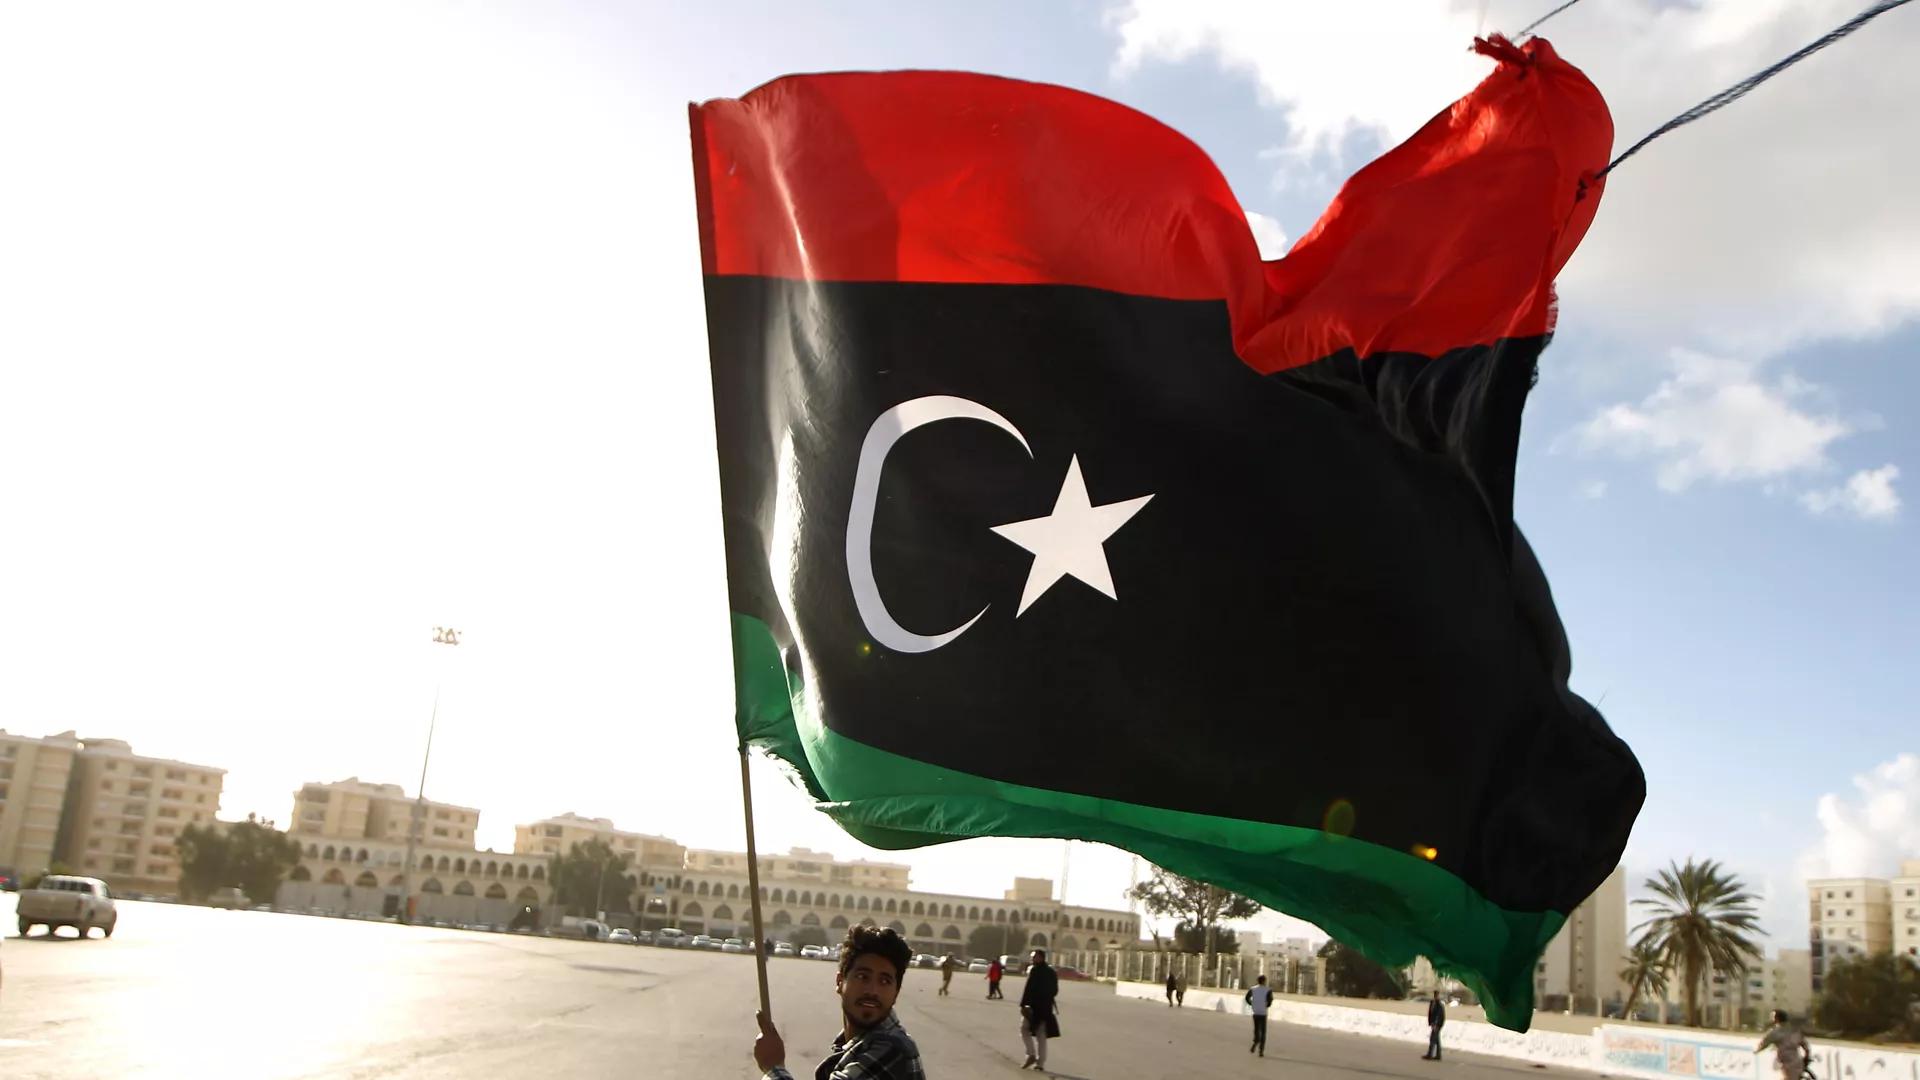 ليبيا تعيد تشغيل أكبر مصنع في شمال أفريقيا لإنتاج البتروكيماويات بعد توقف لأكثر من 10 سنوات